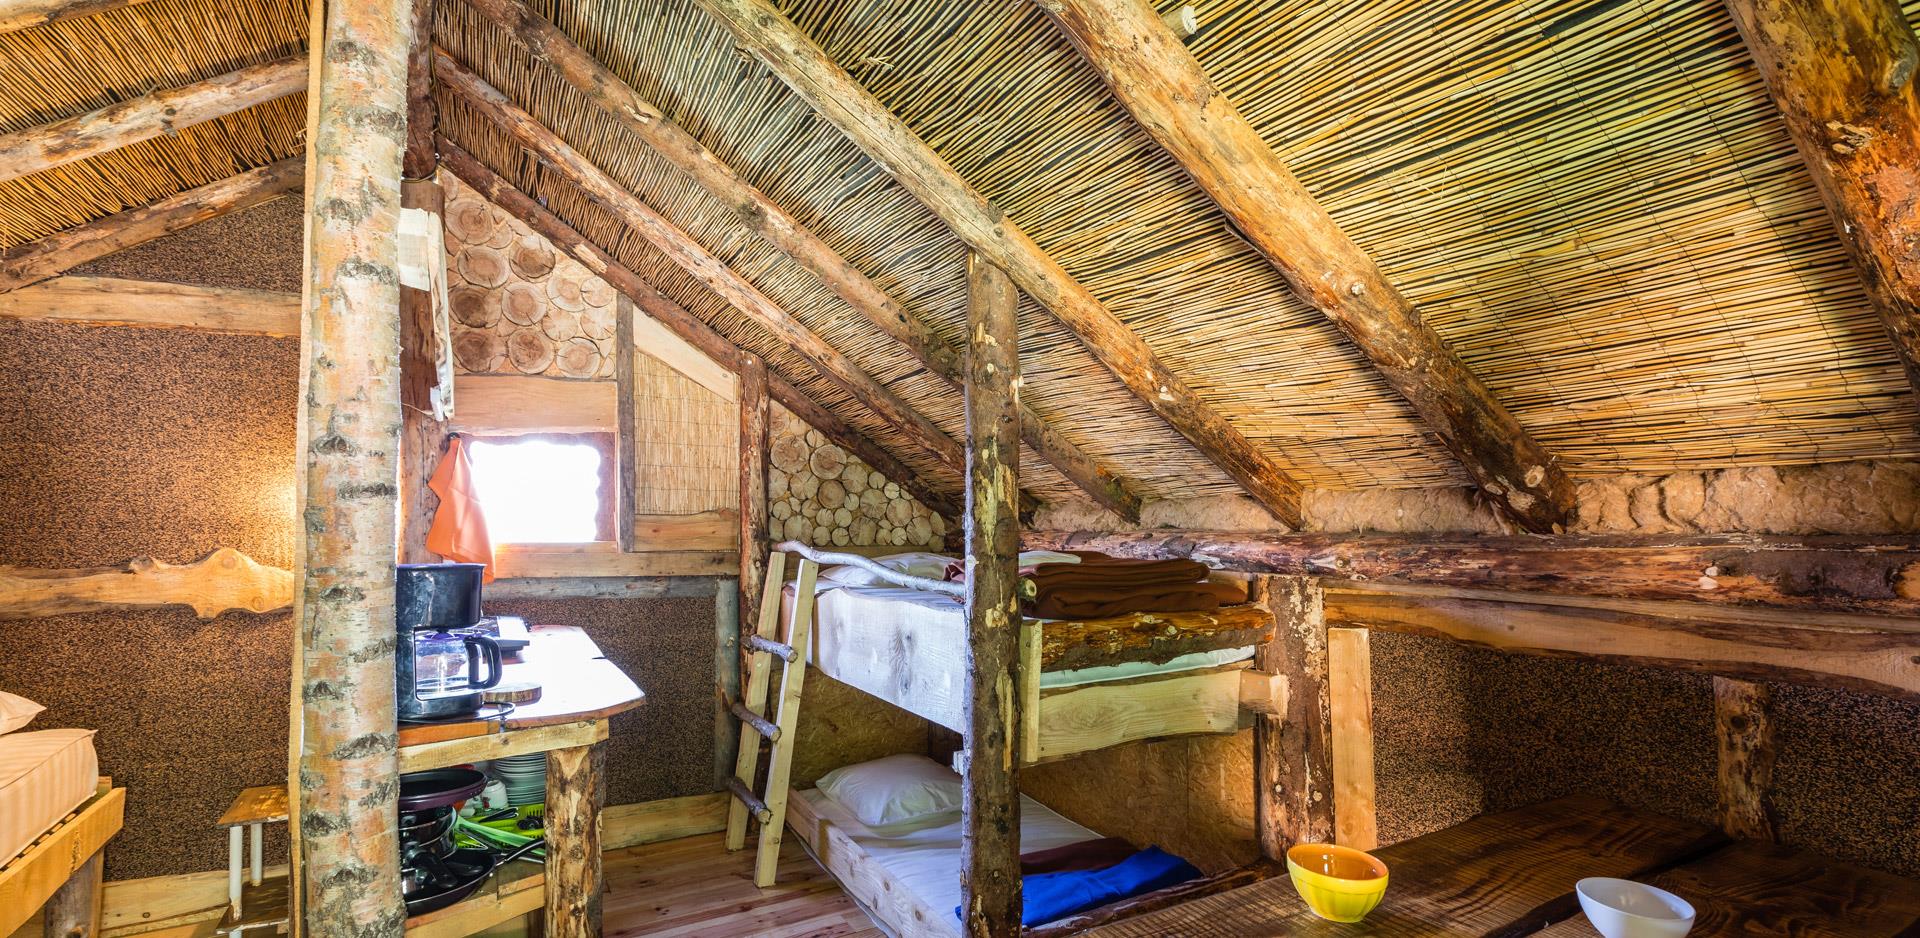 Location d'hébergements insolites dans le Haut-Rhin : vue d'un coin cuisine et lit superposé d'une cabane insolite